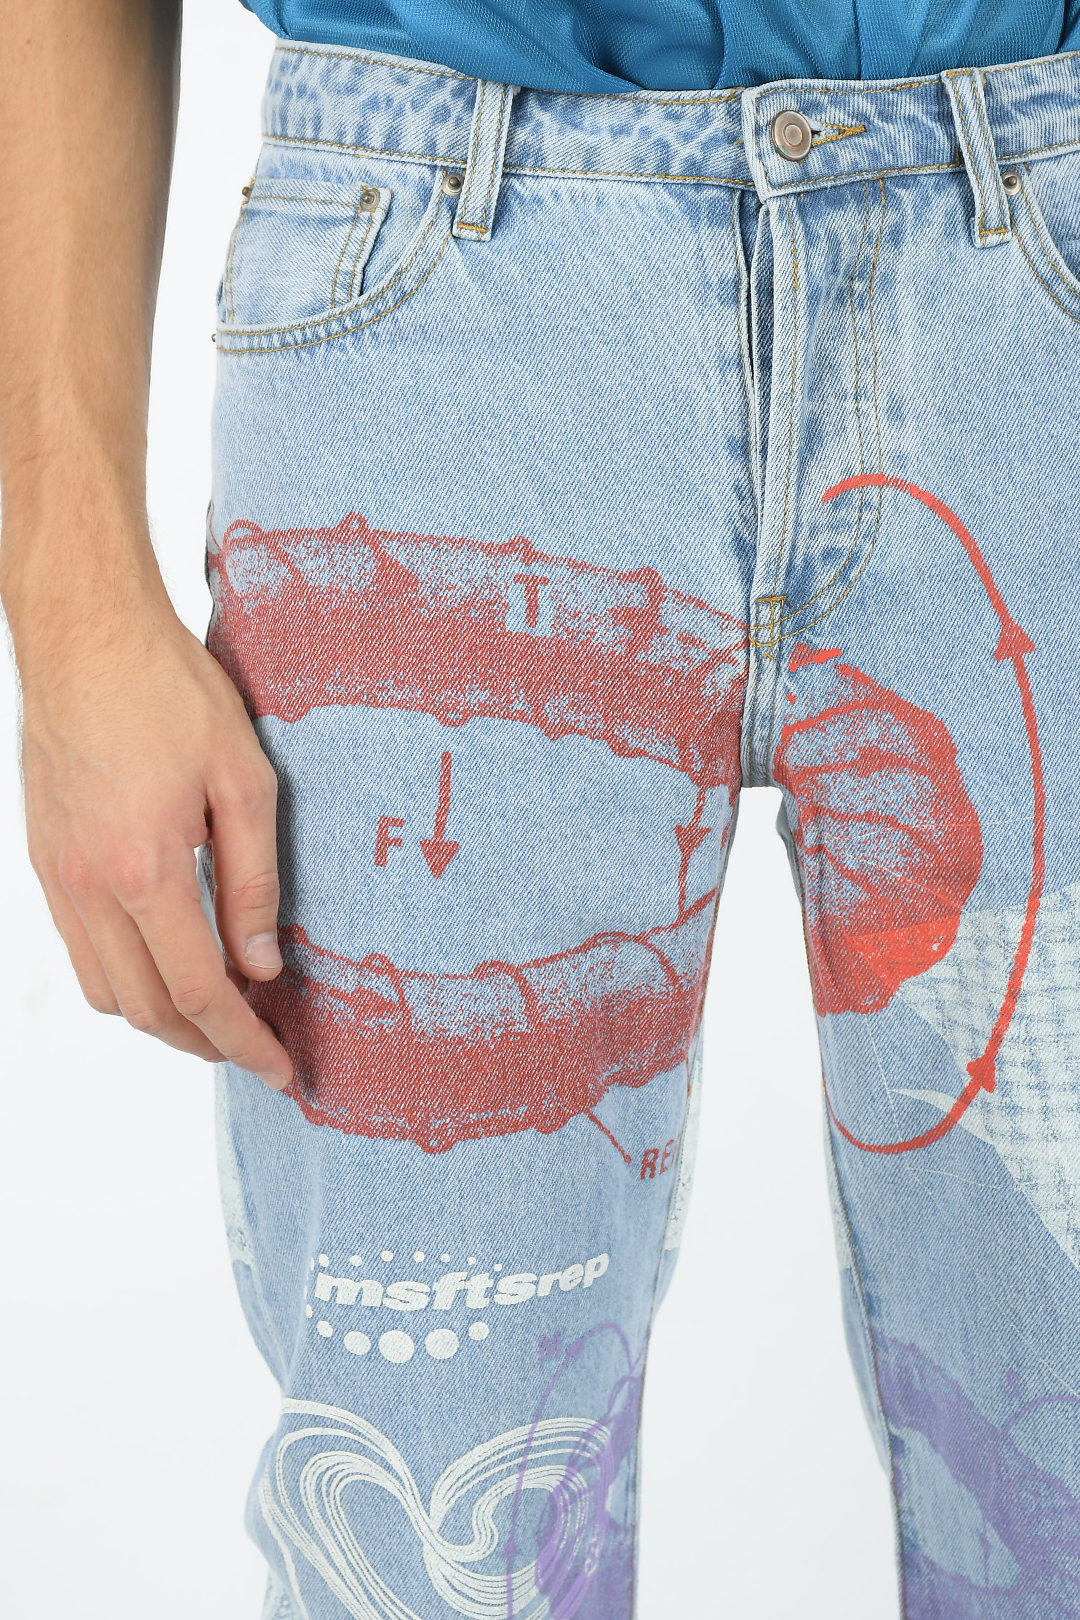 Formode bruge flaskehals MSFTSrep 20cm visible stitching Printed All Over Jeans men - Glamood Outlet